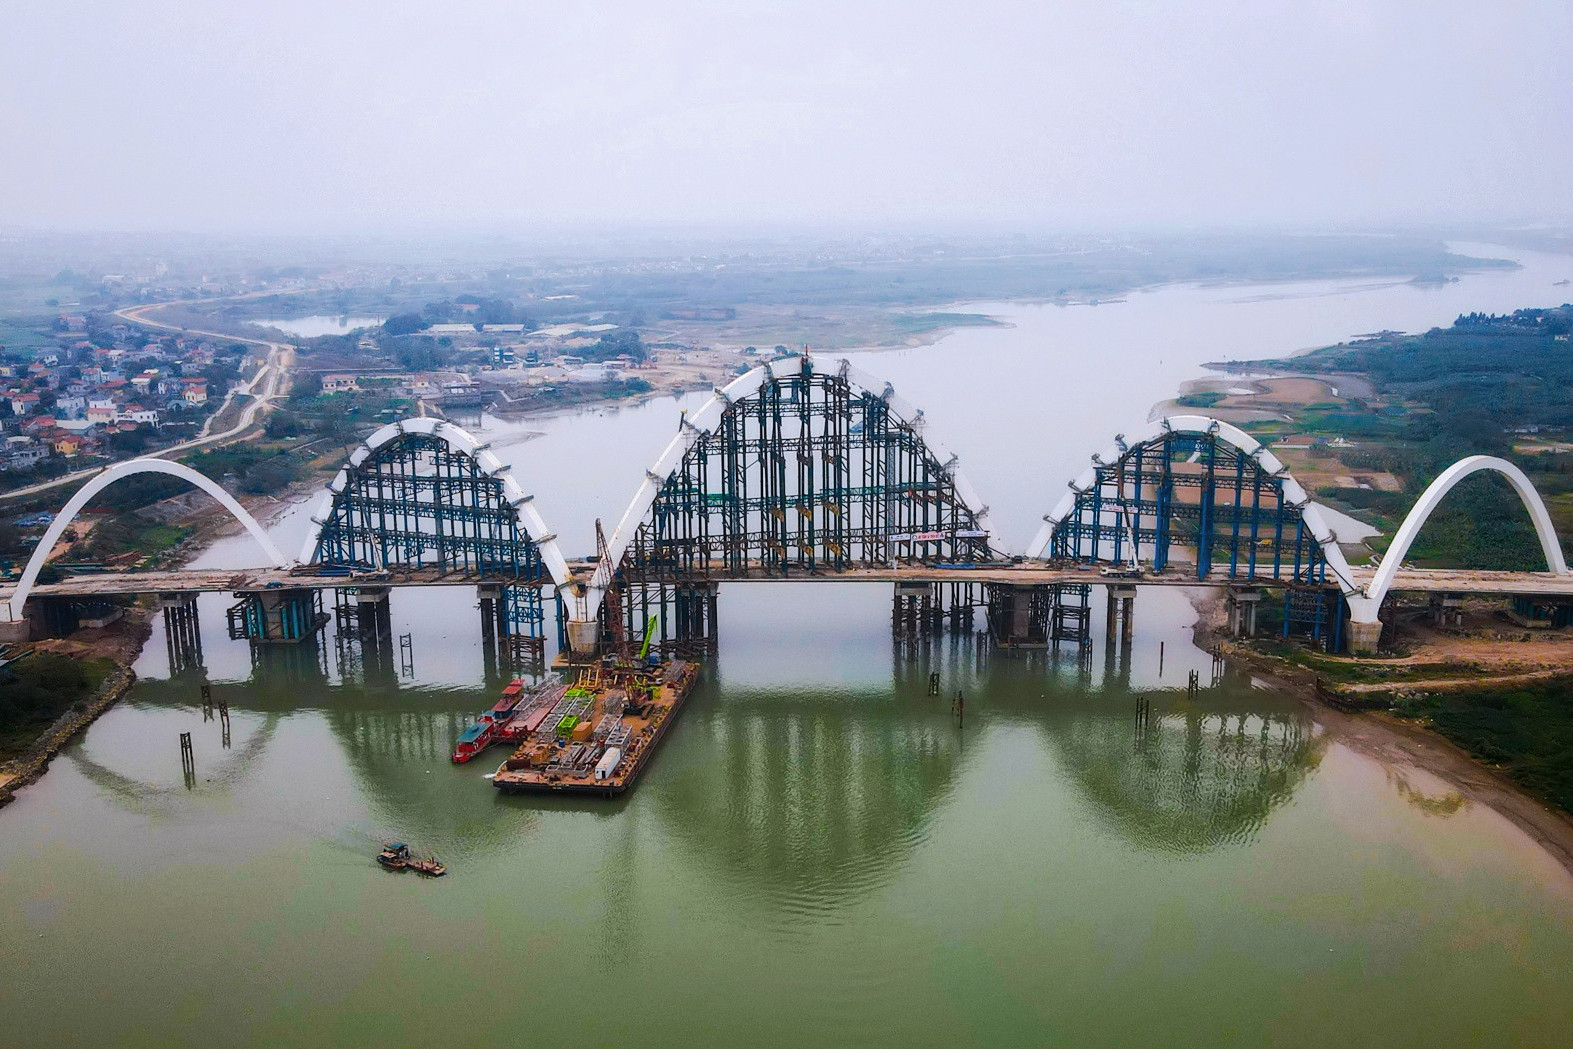 Cây cầu hình rồng đắt tiền nhất tỉnh Bắc Ninh đang thành hình